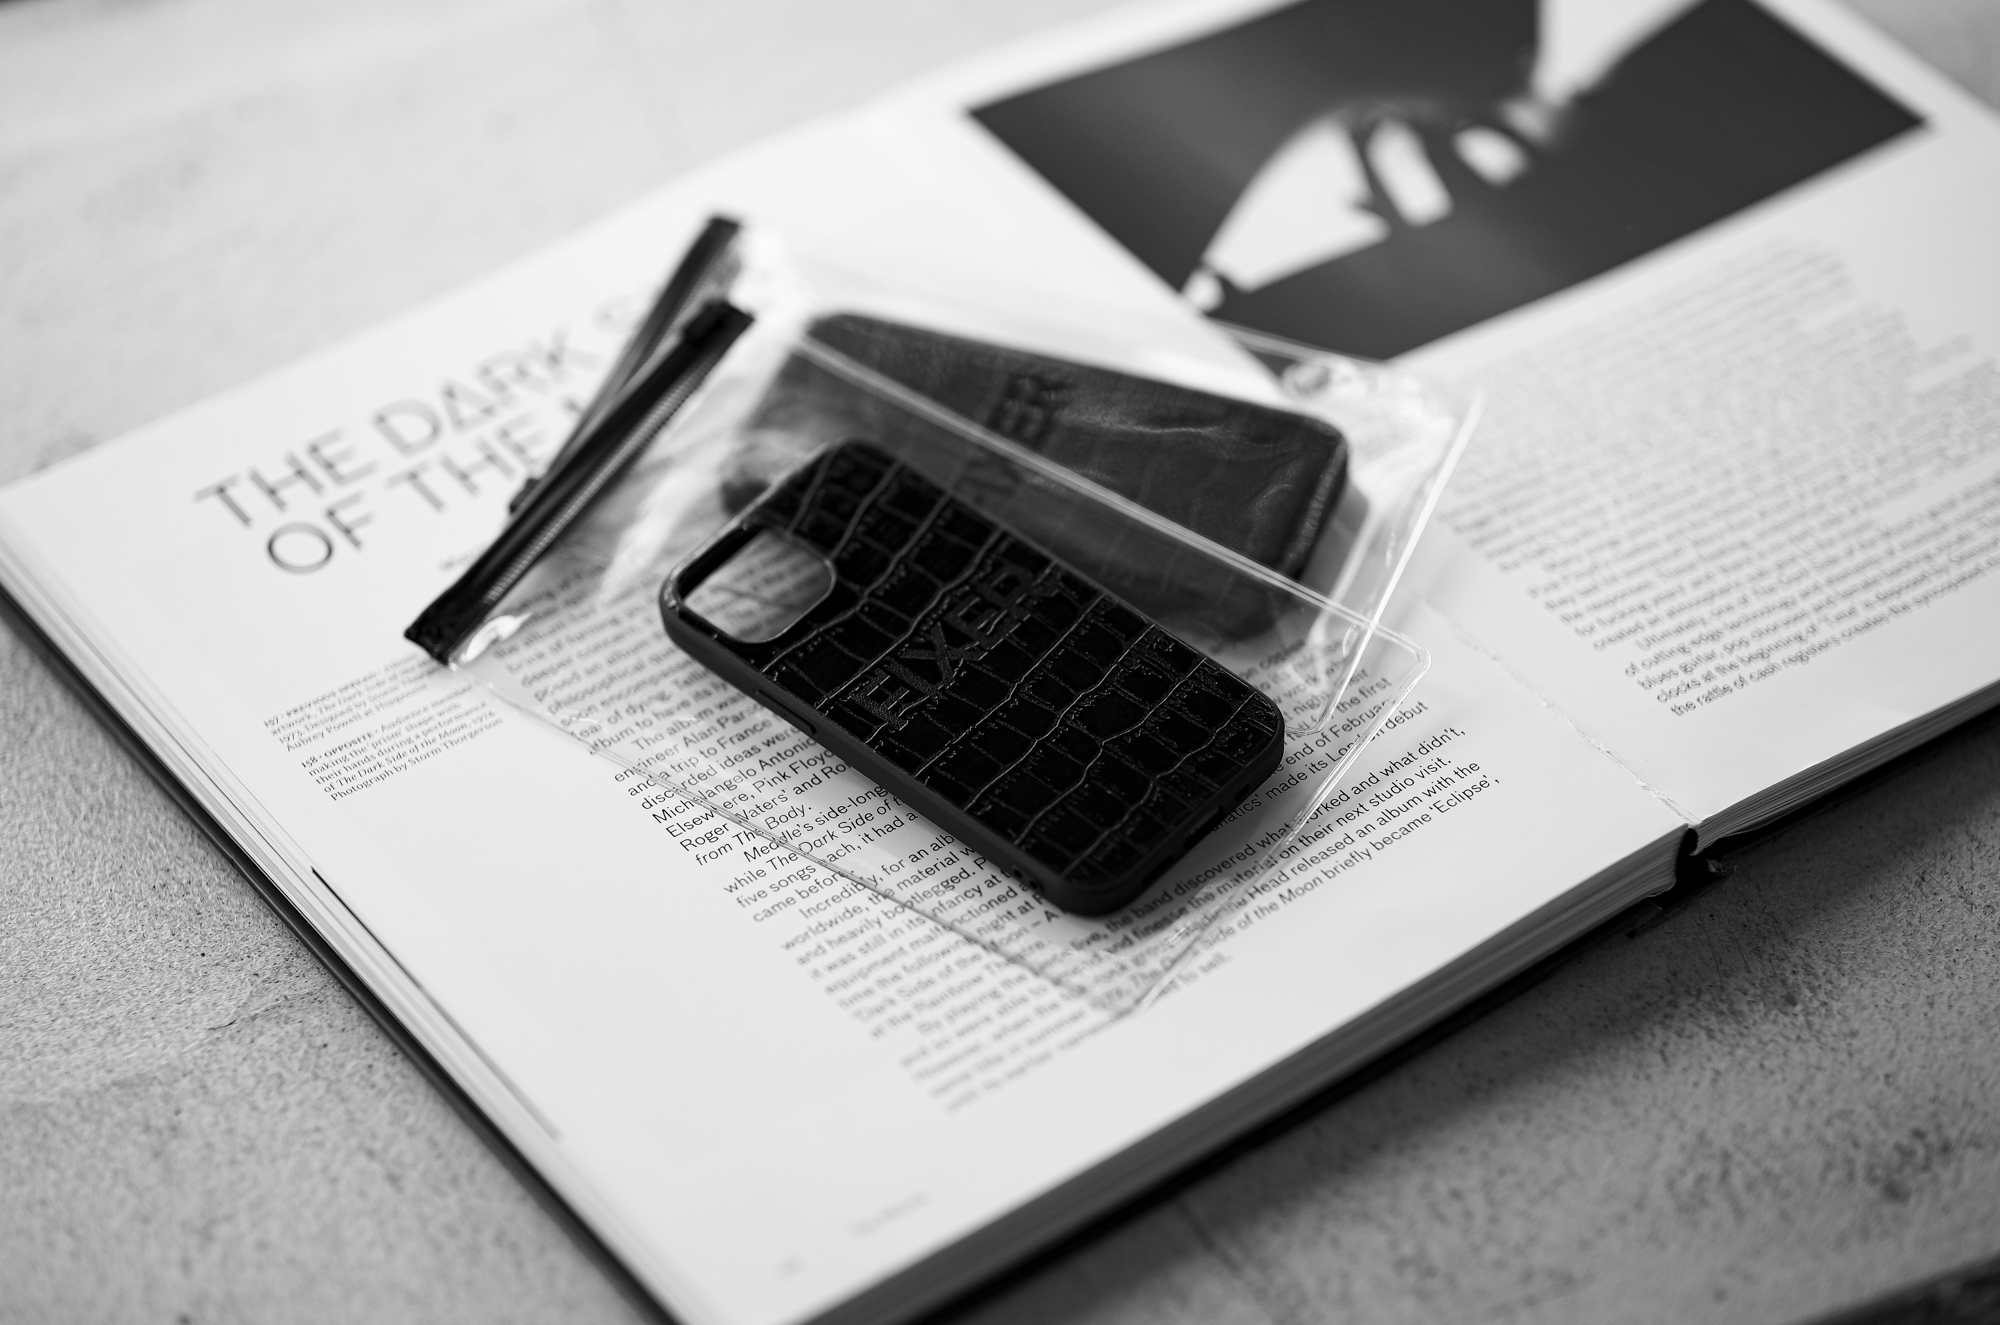 FIXER "iPhone 13mini Crocodile Case" ALL BLACK フィクサー アイフォンケース 携帯ケース ノーマルケース クロコダイルケース ブラック ブラック ホワイト オールブラック 愛知 名古屋 Alto e Diritto altoediritto アルトエデリット